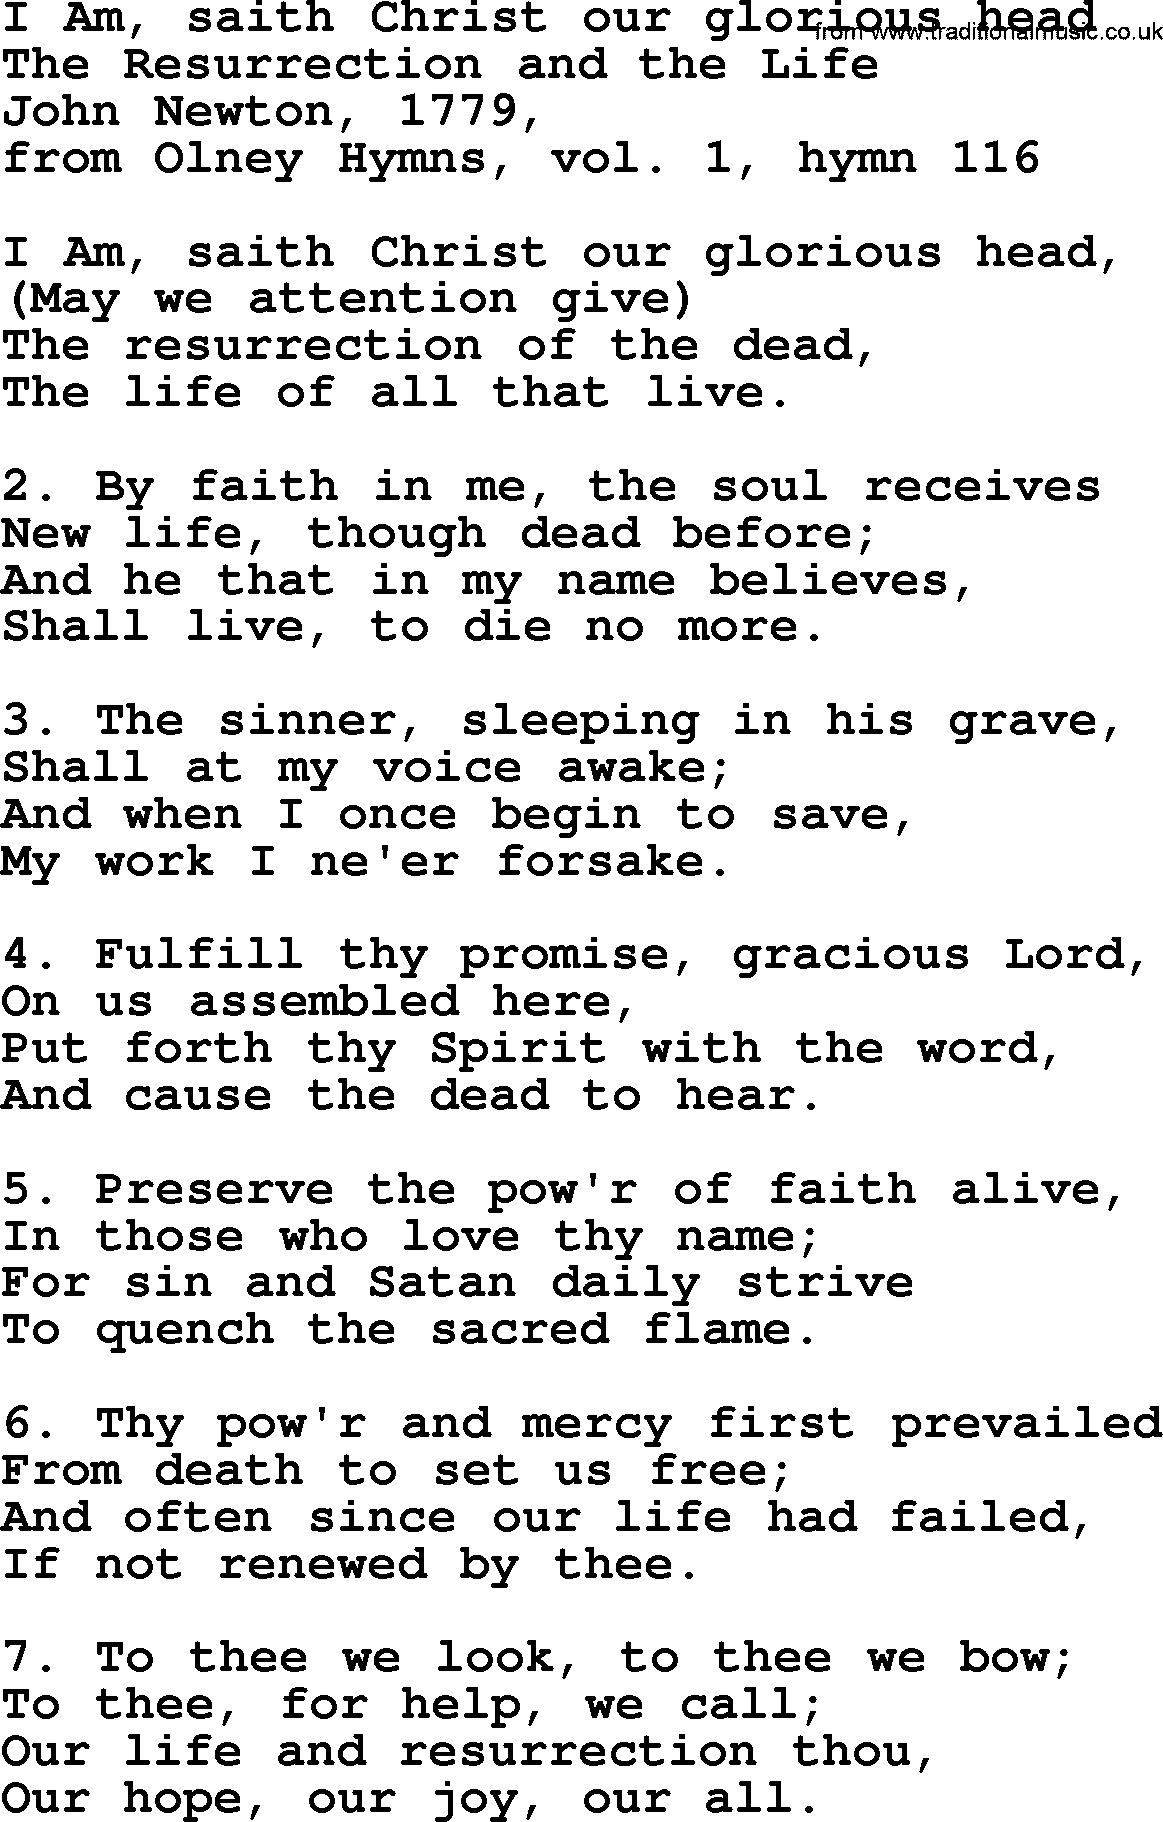 John Newton hymn: I Am, Saith Christ Our Glorious Head, lyrics